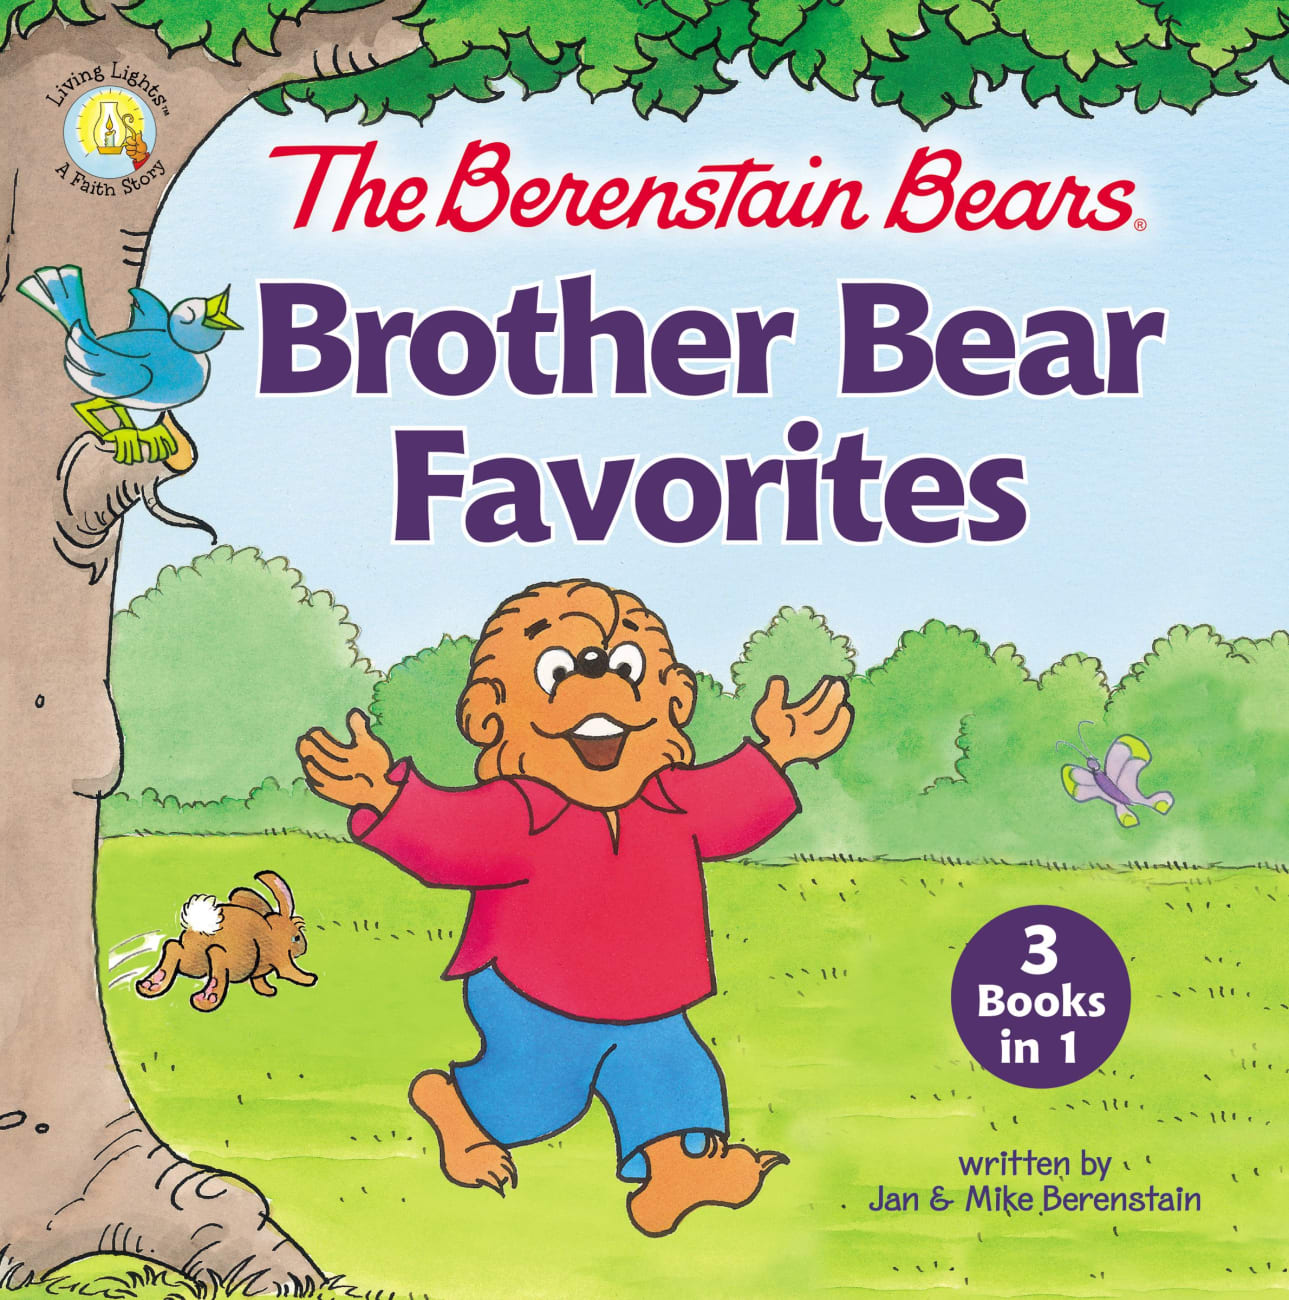 The Berenstain Bears Brother Bear Favorites (The Berenstain Bears Series) Hardback